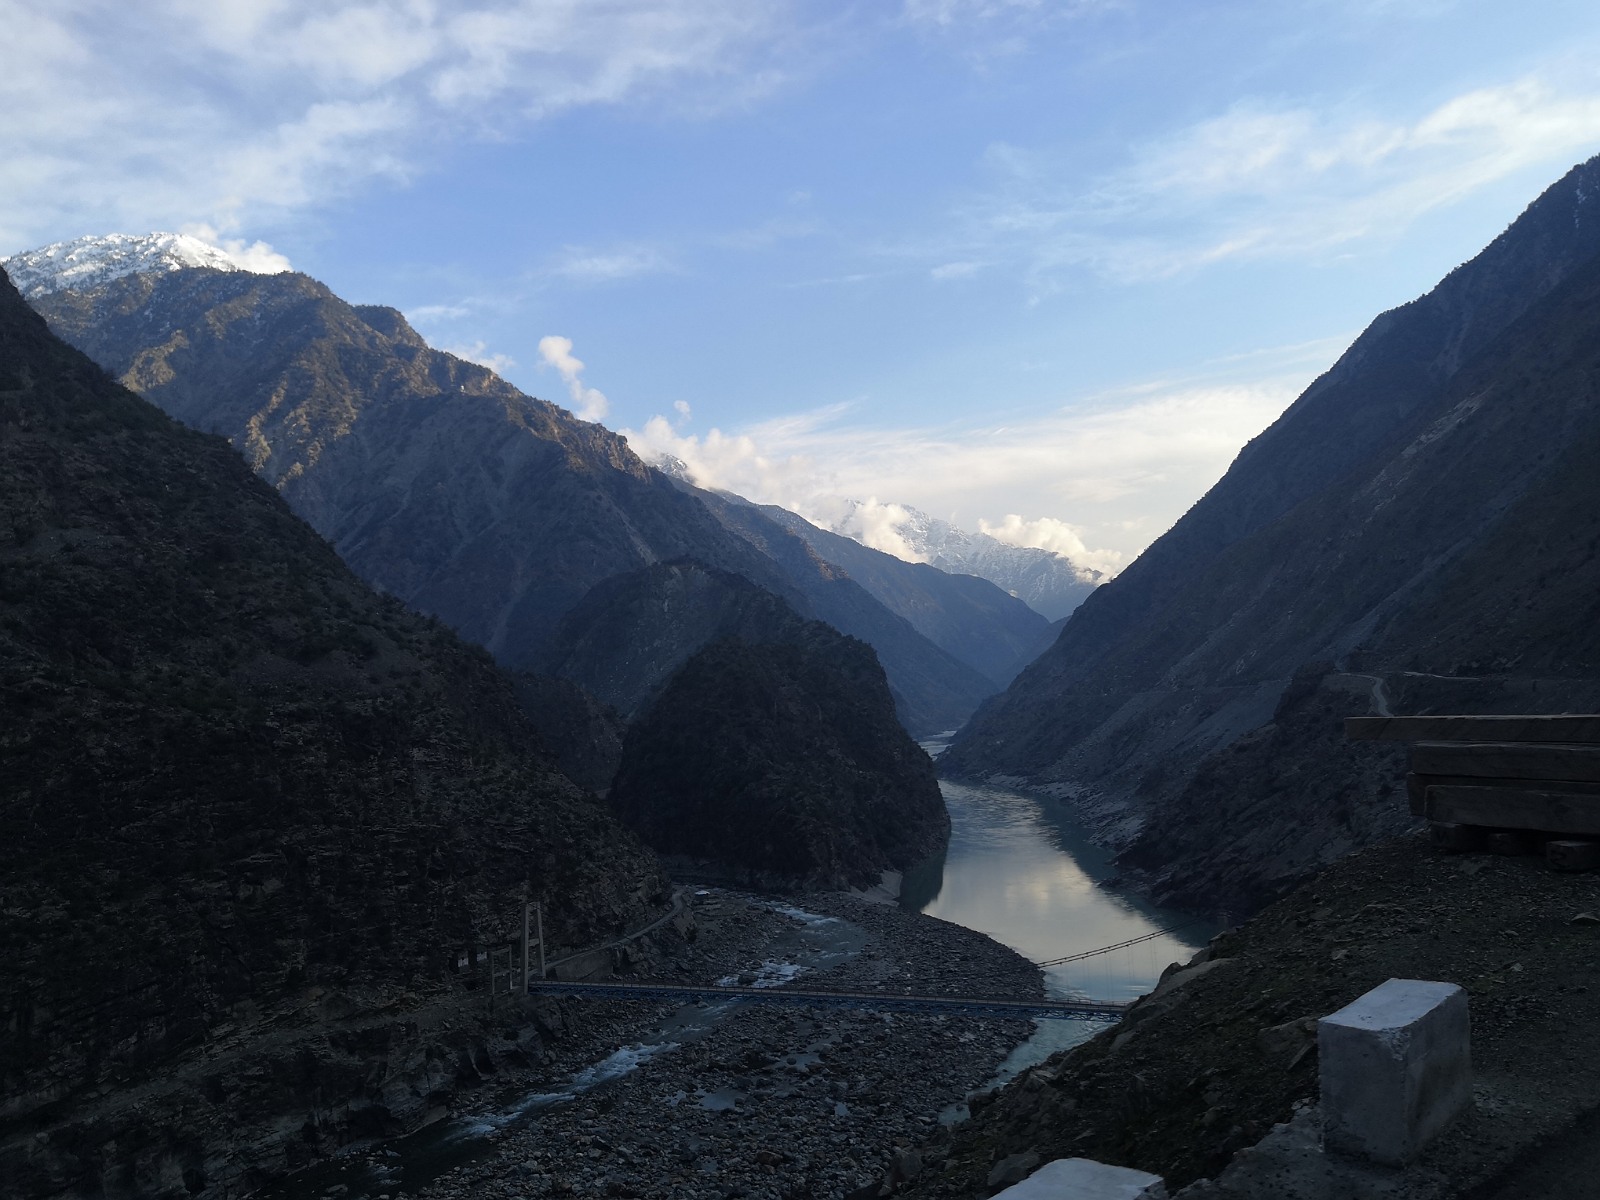 Widok na rzekę Indus i góry Karakorum